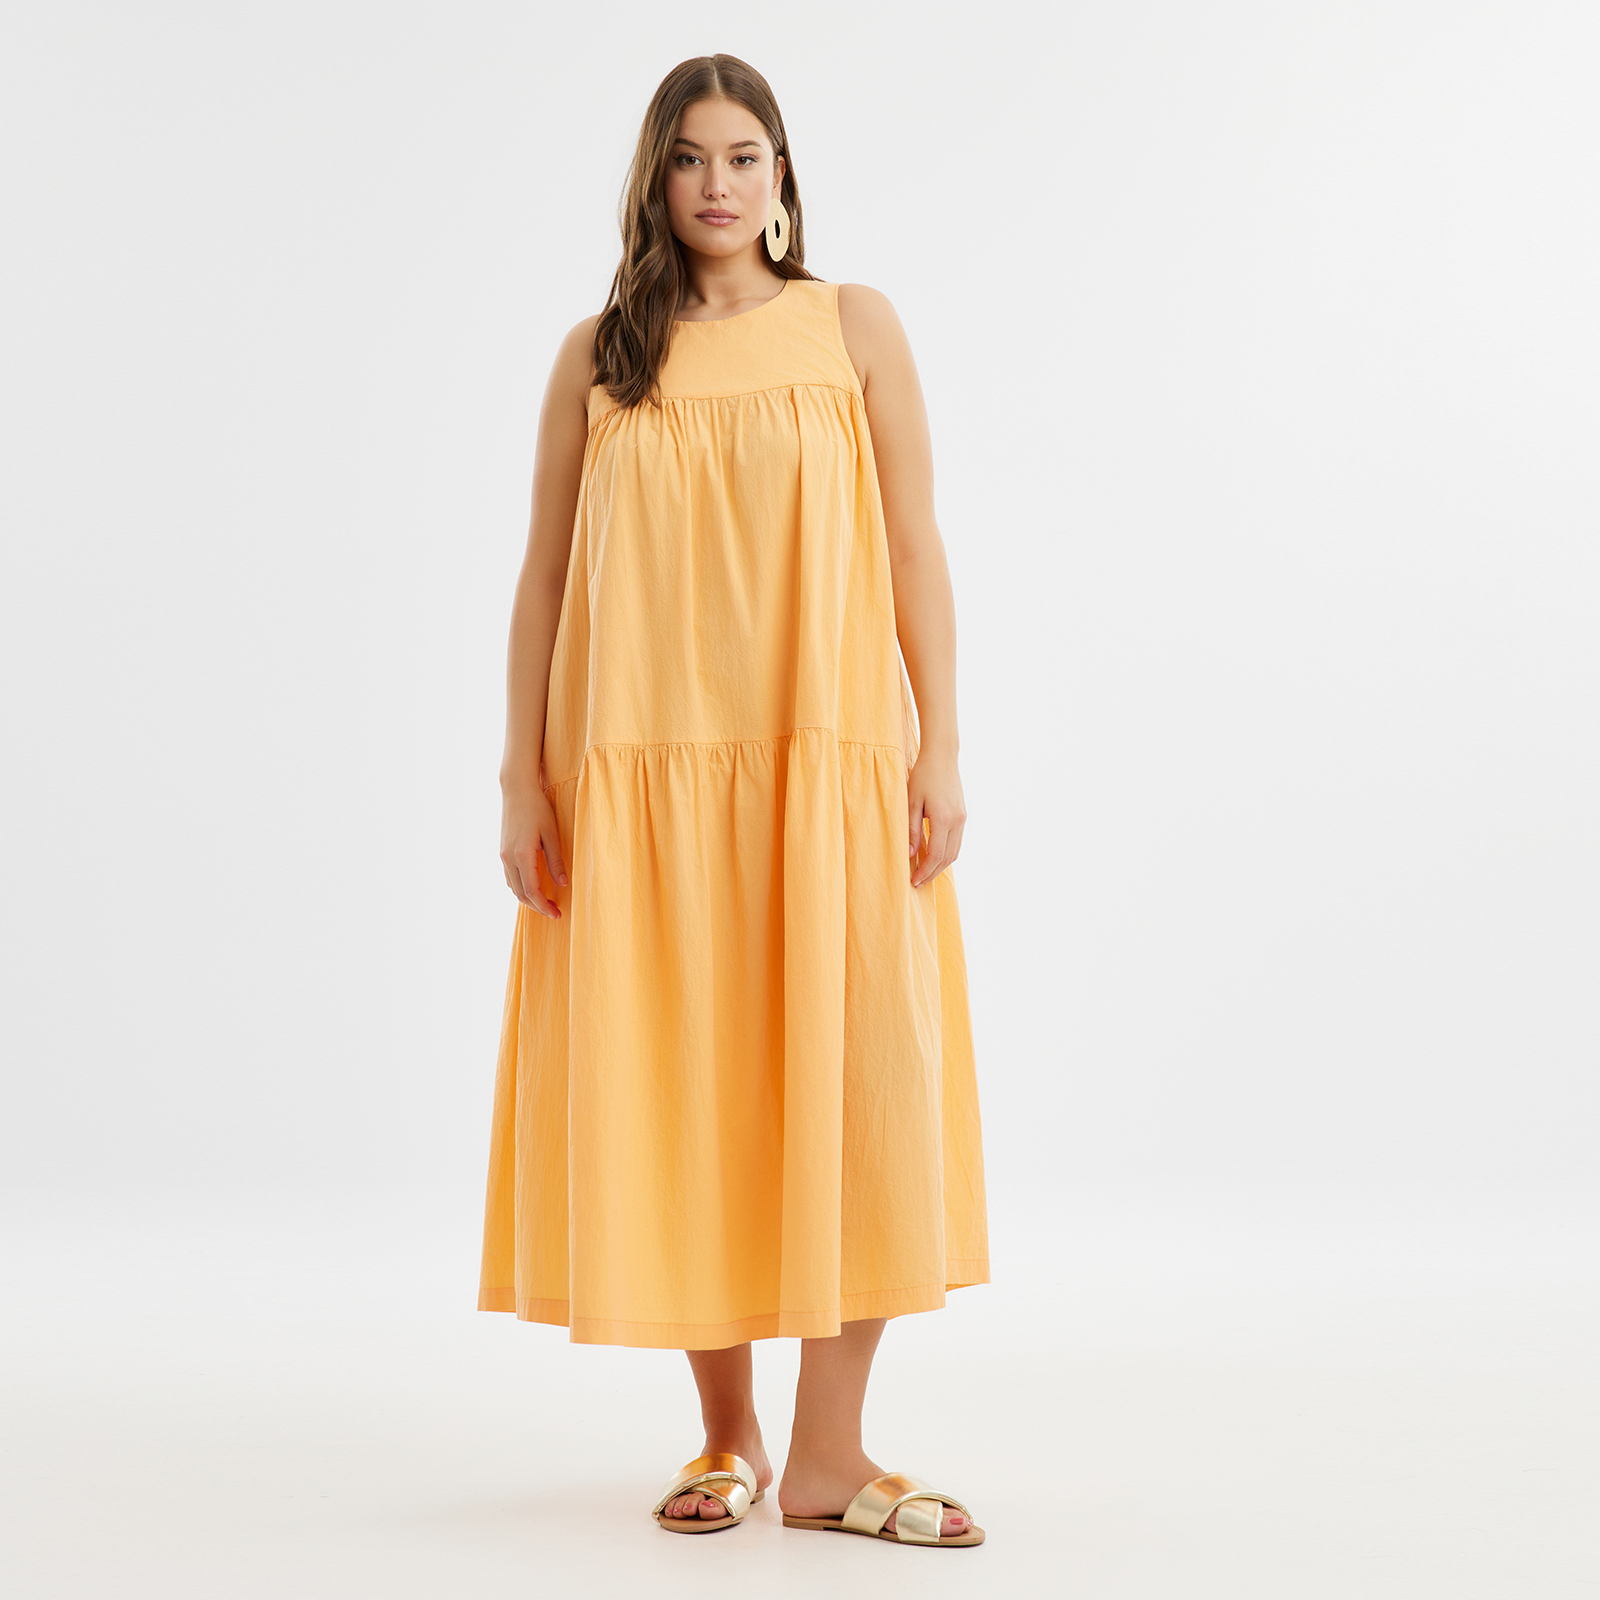 Φόρεμα βαμβακερό με βολάν 8101.7236-peach